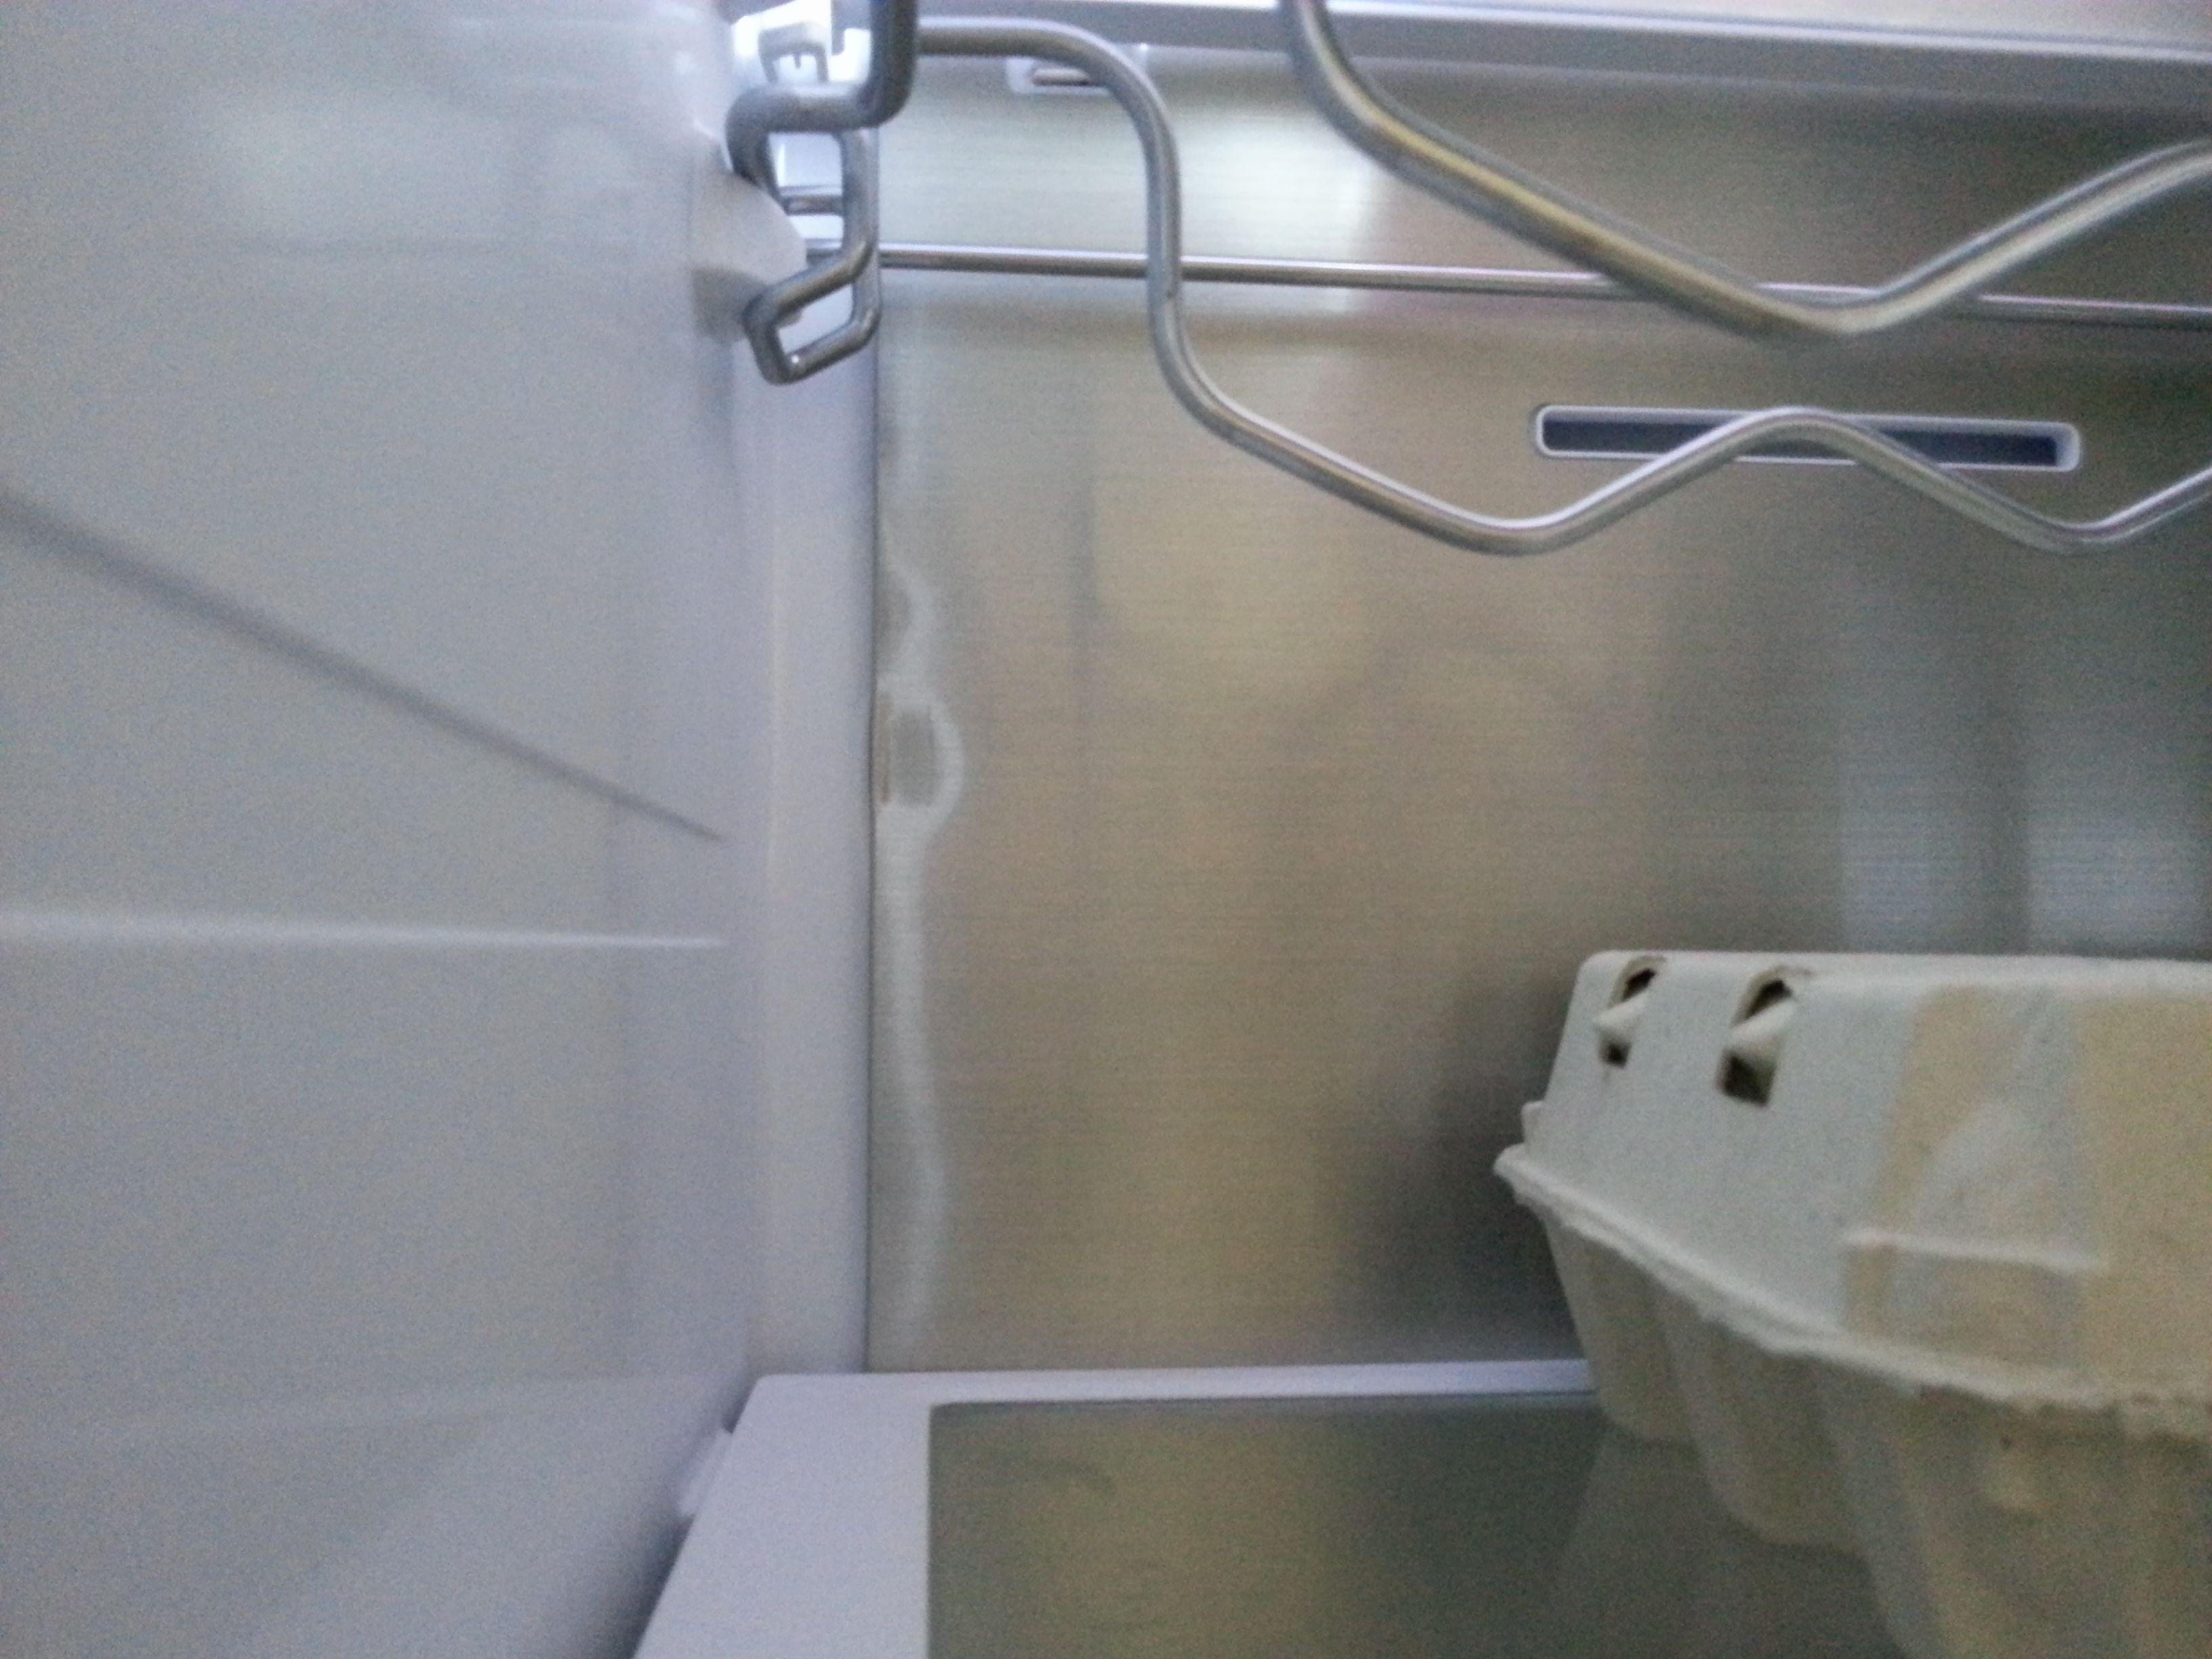 Frigorifero rb36j8799s4 con accumulo acqua sul fondo dello scomparto  frigorifero - Pagina 5 - Samsung Community